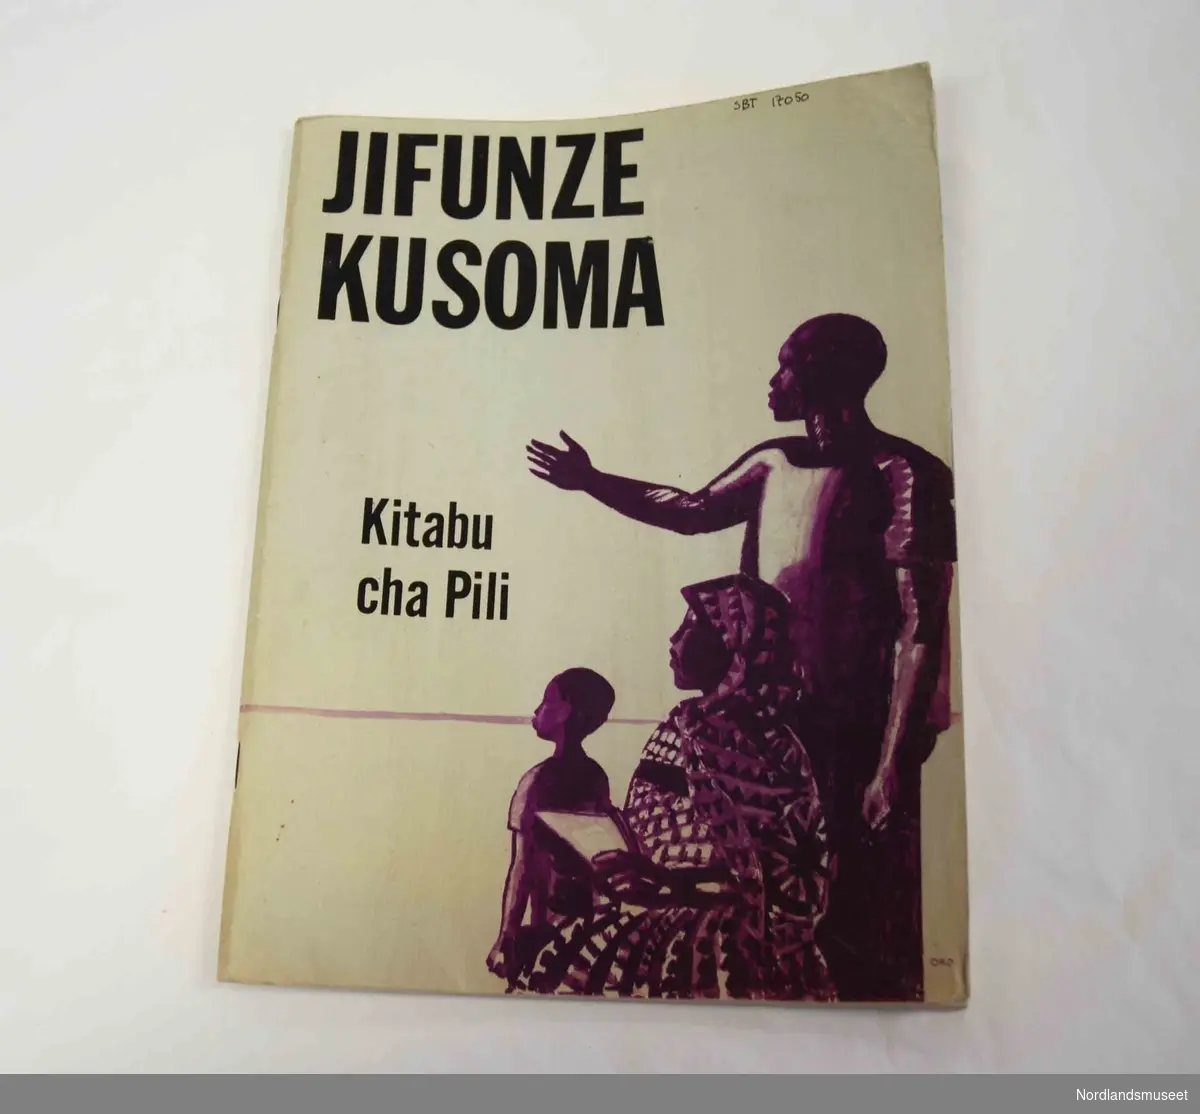 Lærebok i språk. (tanzania)
Boktittel:
Jifunze kusoma
Kitabu cha Pili